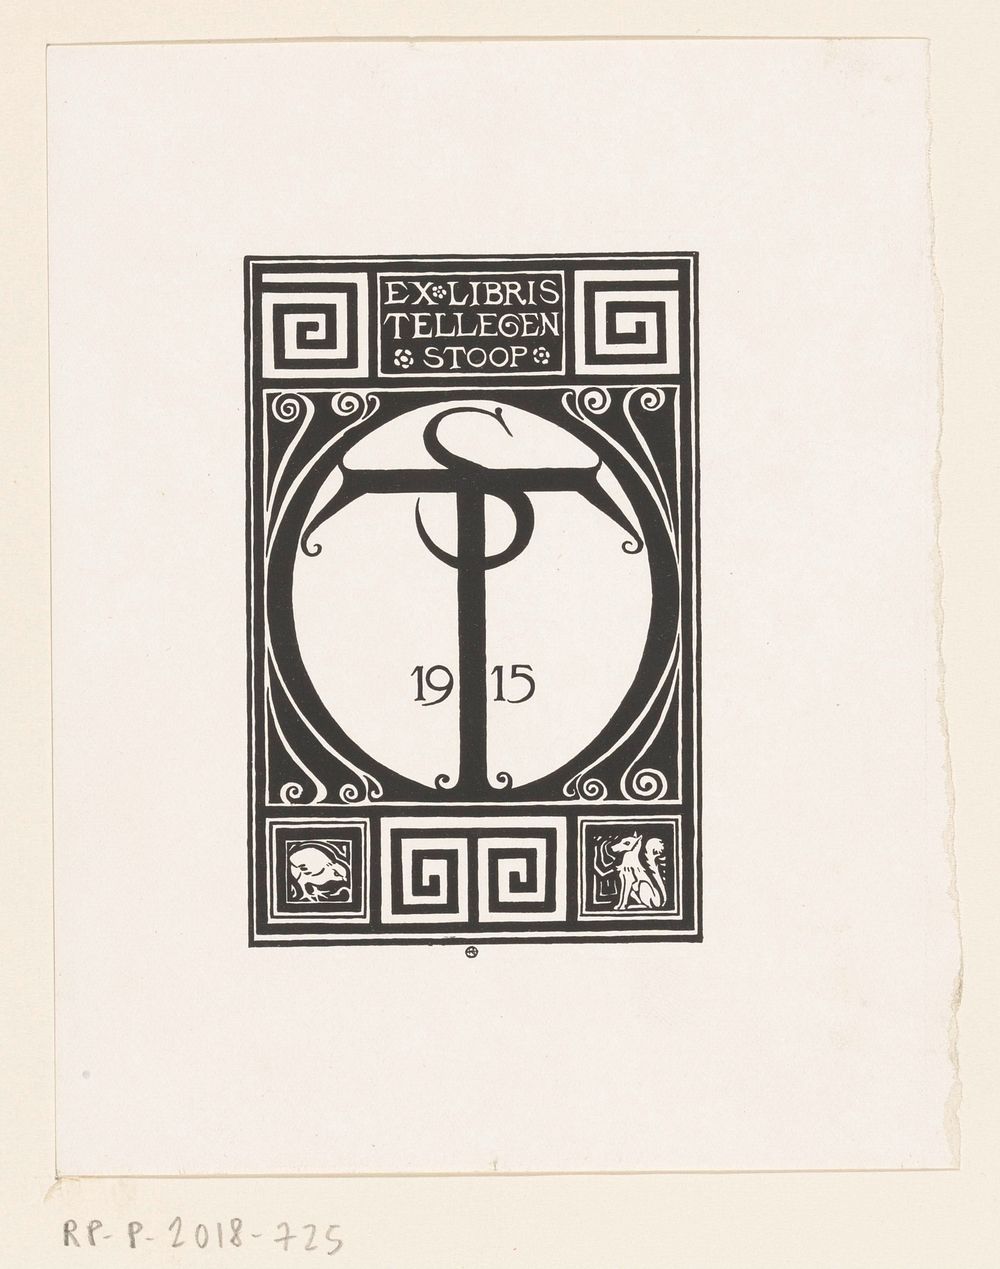 Ex libris van Tellegen-Stoop (1915) by Richard Nicolaüs Roland Holst